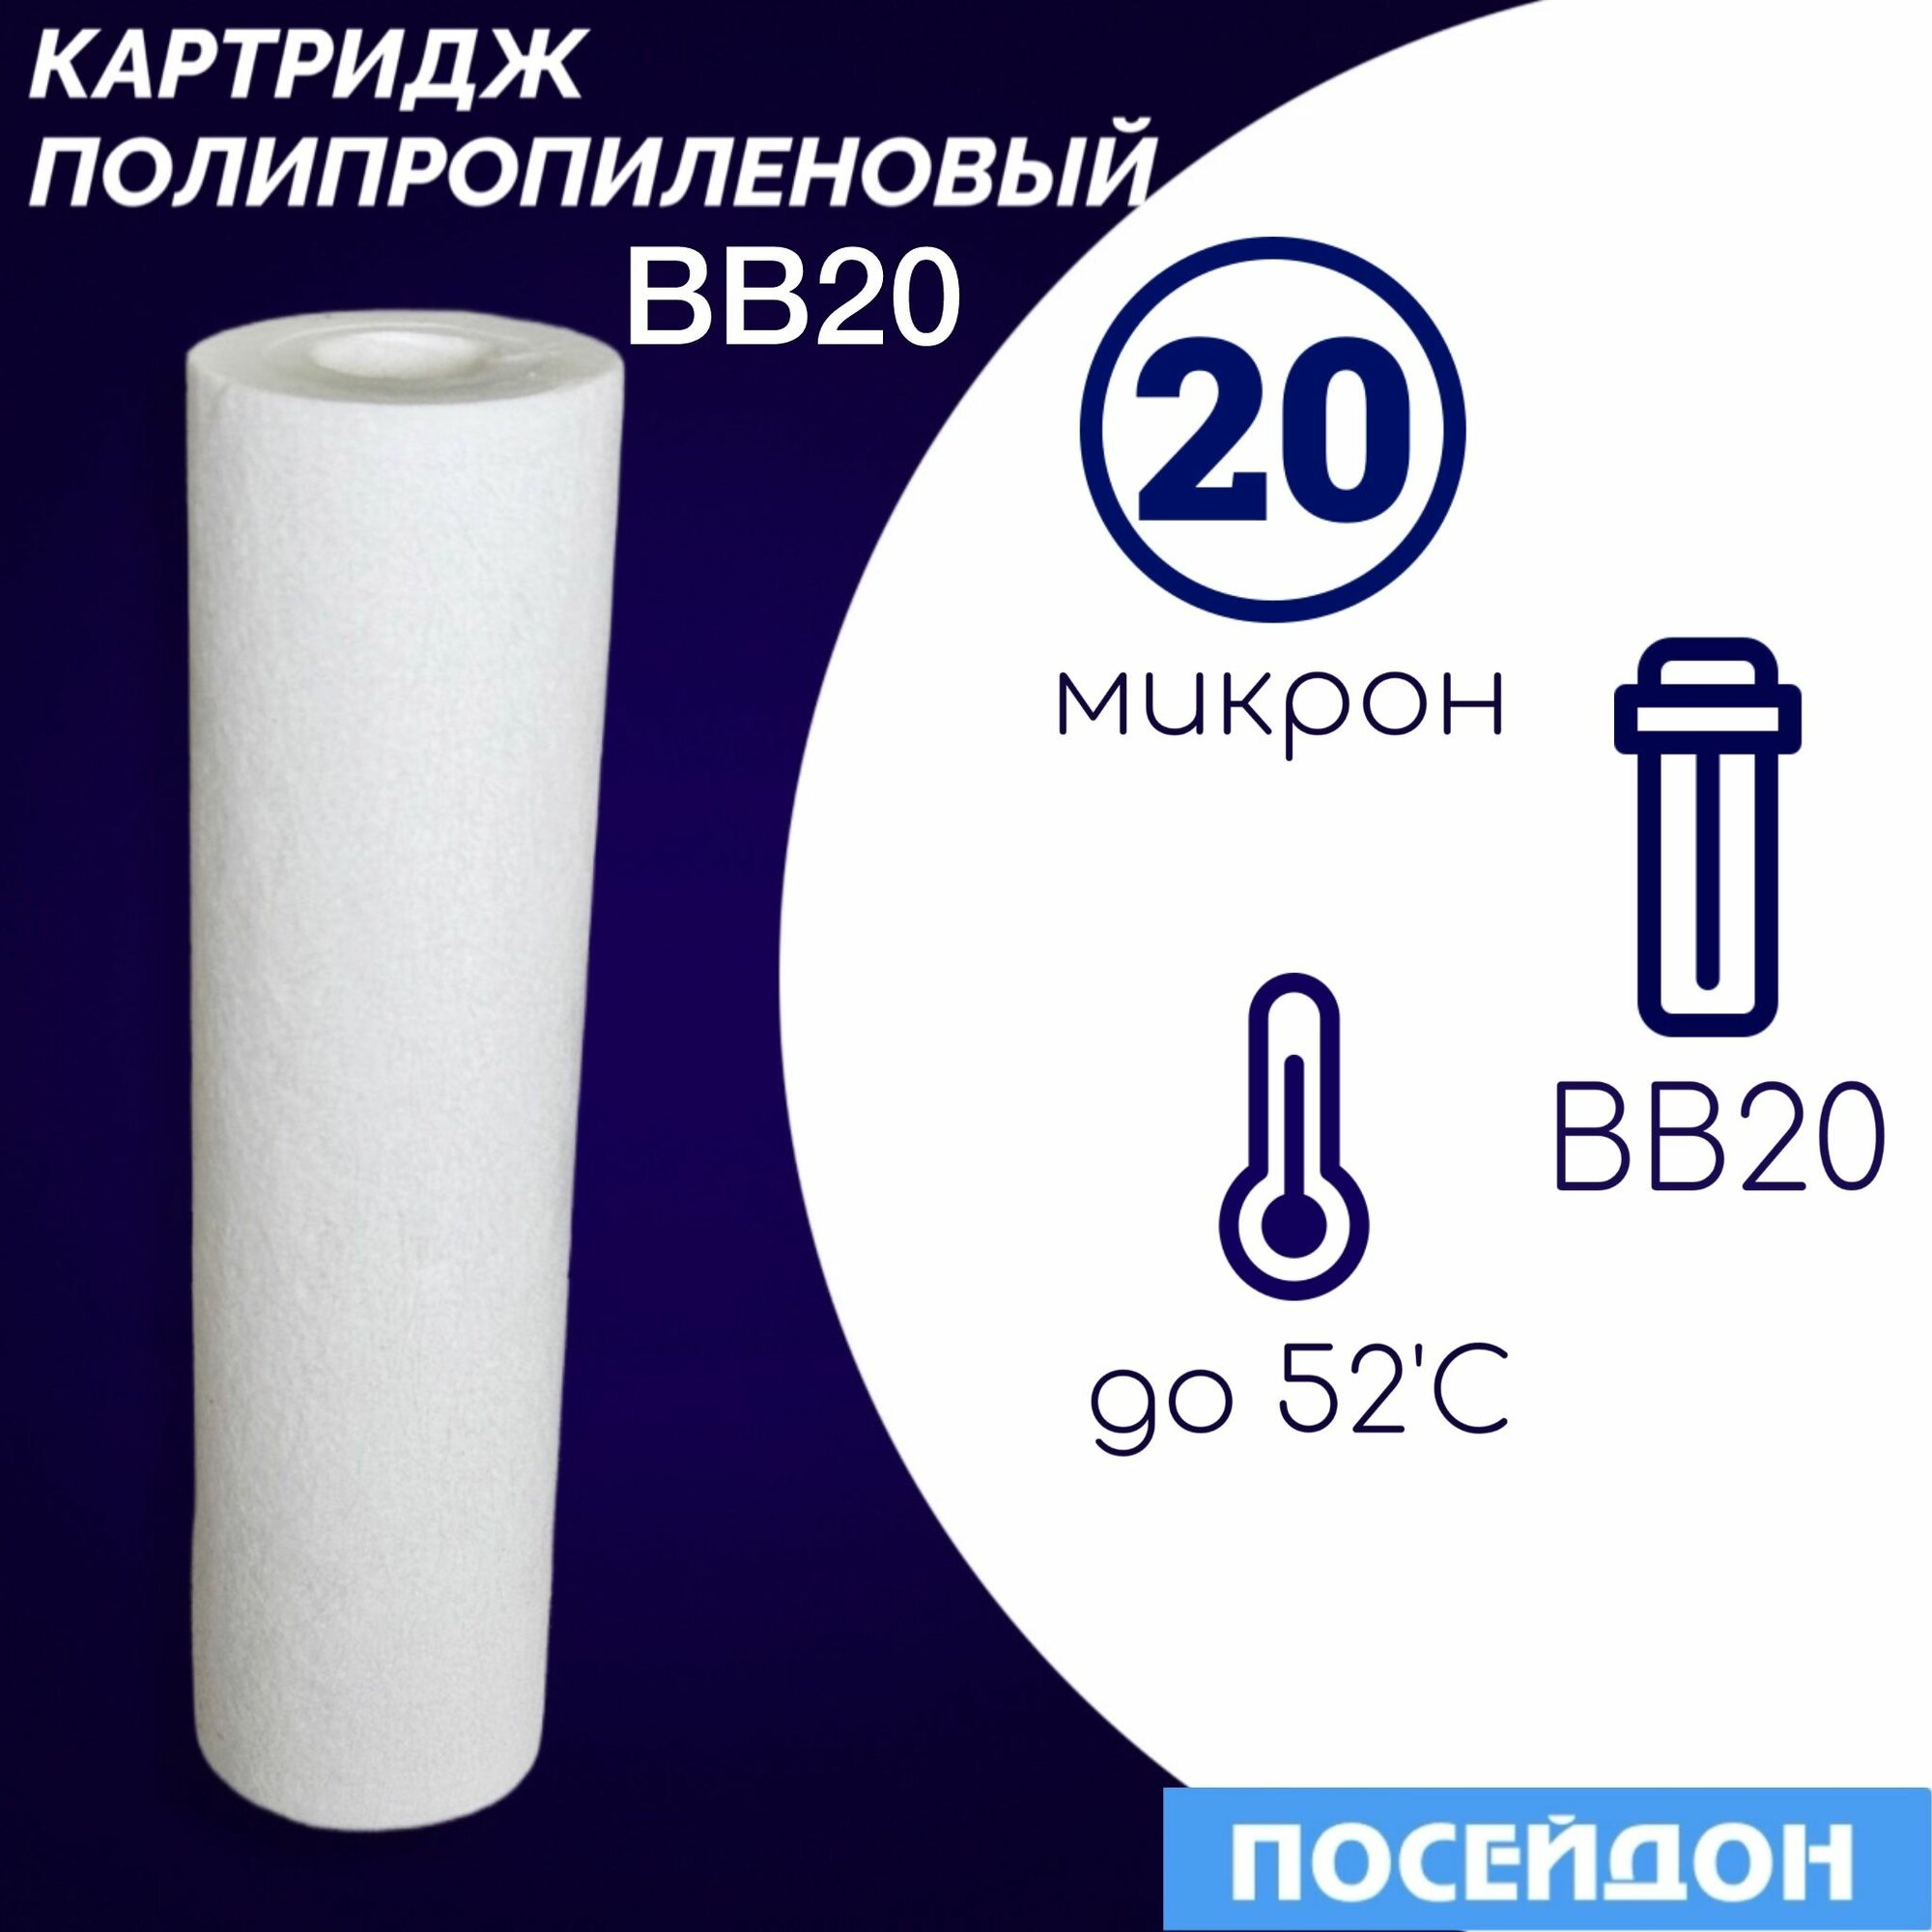 Картридж полипропиленовый ЭФГ 112/508(1шт) 20 мкм элемент фильтрующий BigBlue20. BB20 20 микрон